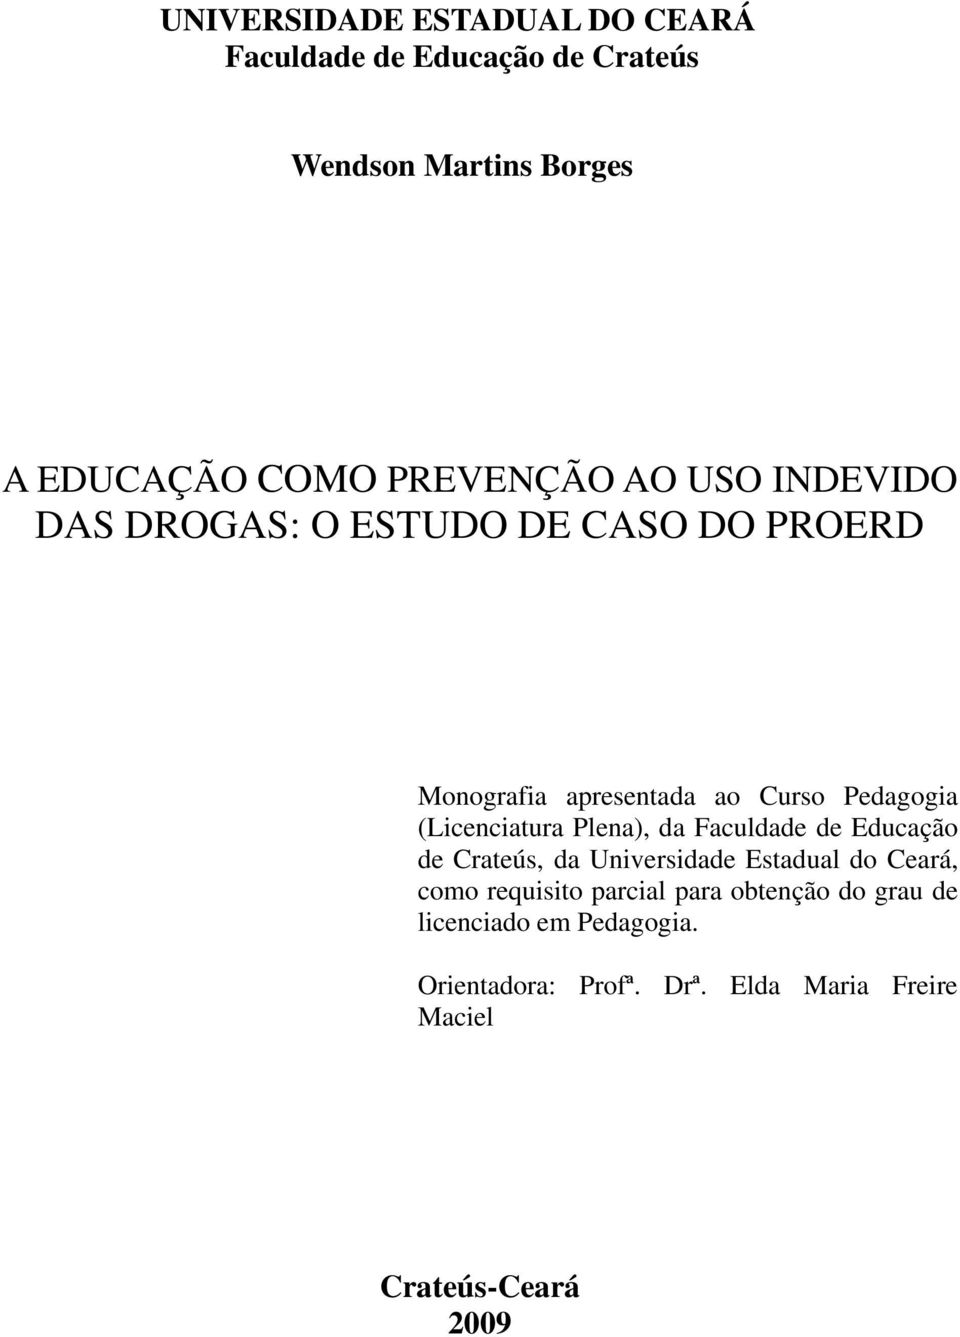 (Licenciatura Plena), da Faculdade de Educação de Crateús, da Universidade Estadual do Ceará, como requisito